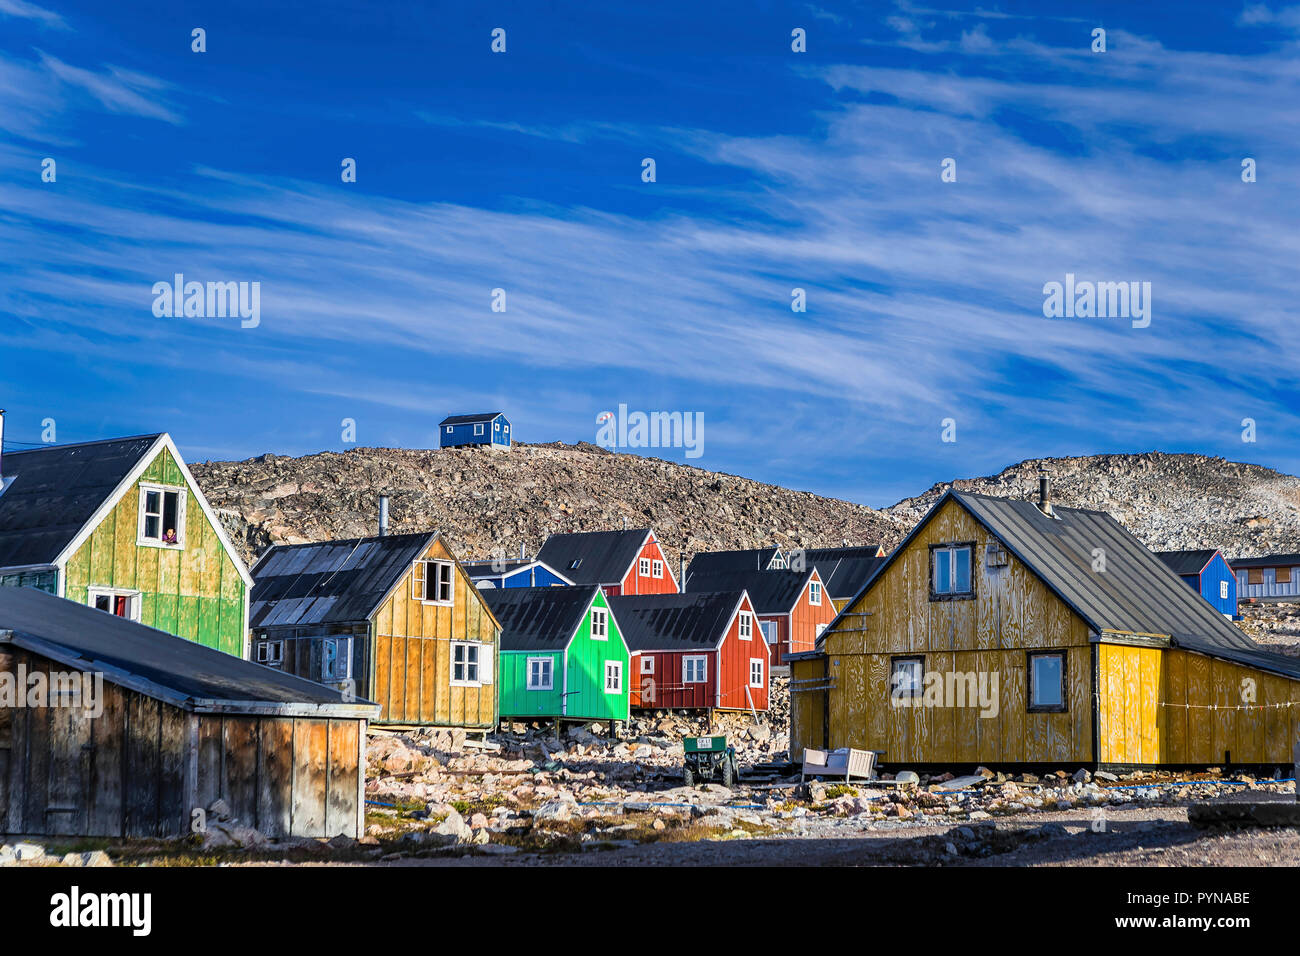 Maisons colorées au village Inuit Ittoqqortoormiit, Scoresbysunde région Nord, le Groenland, l'Arctique, océan polaire Banque D'Images